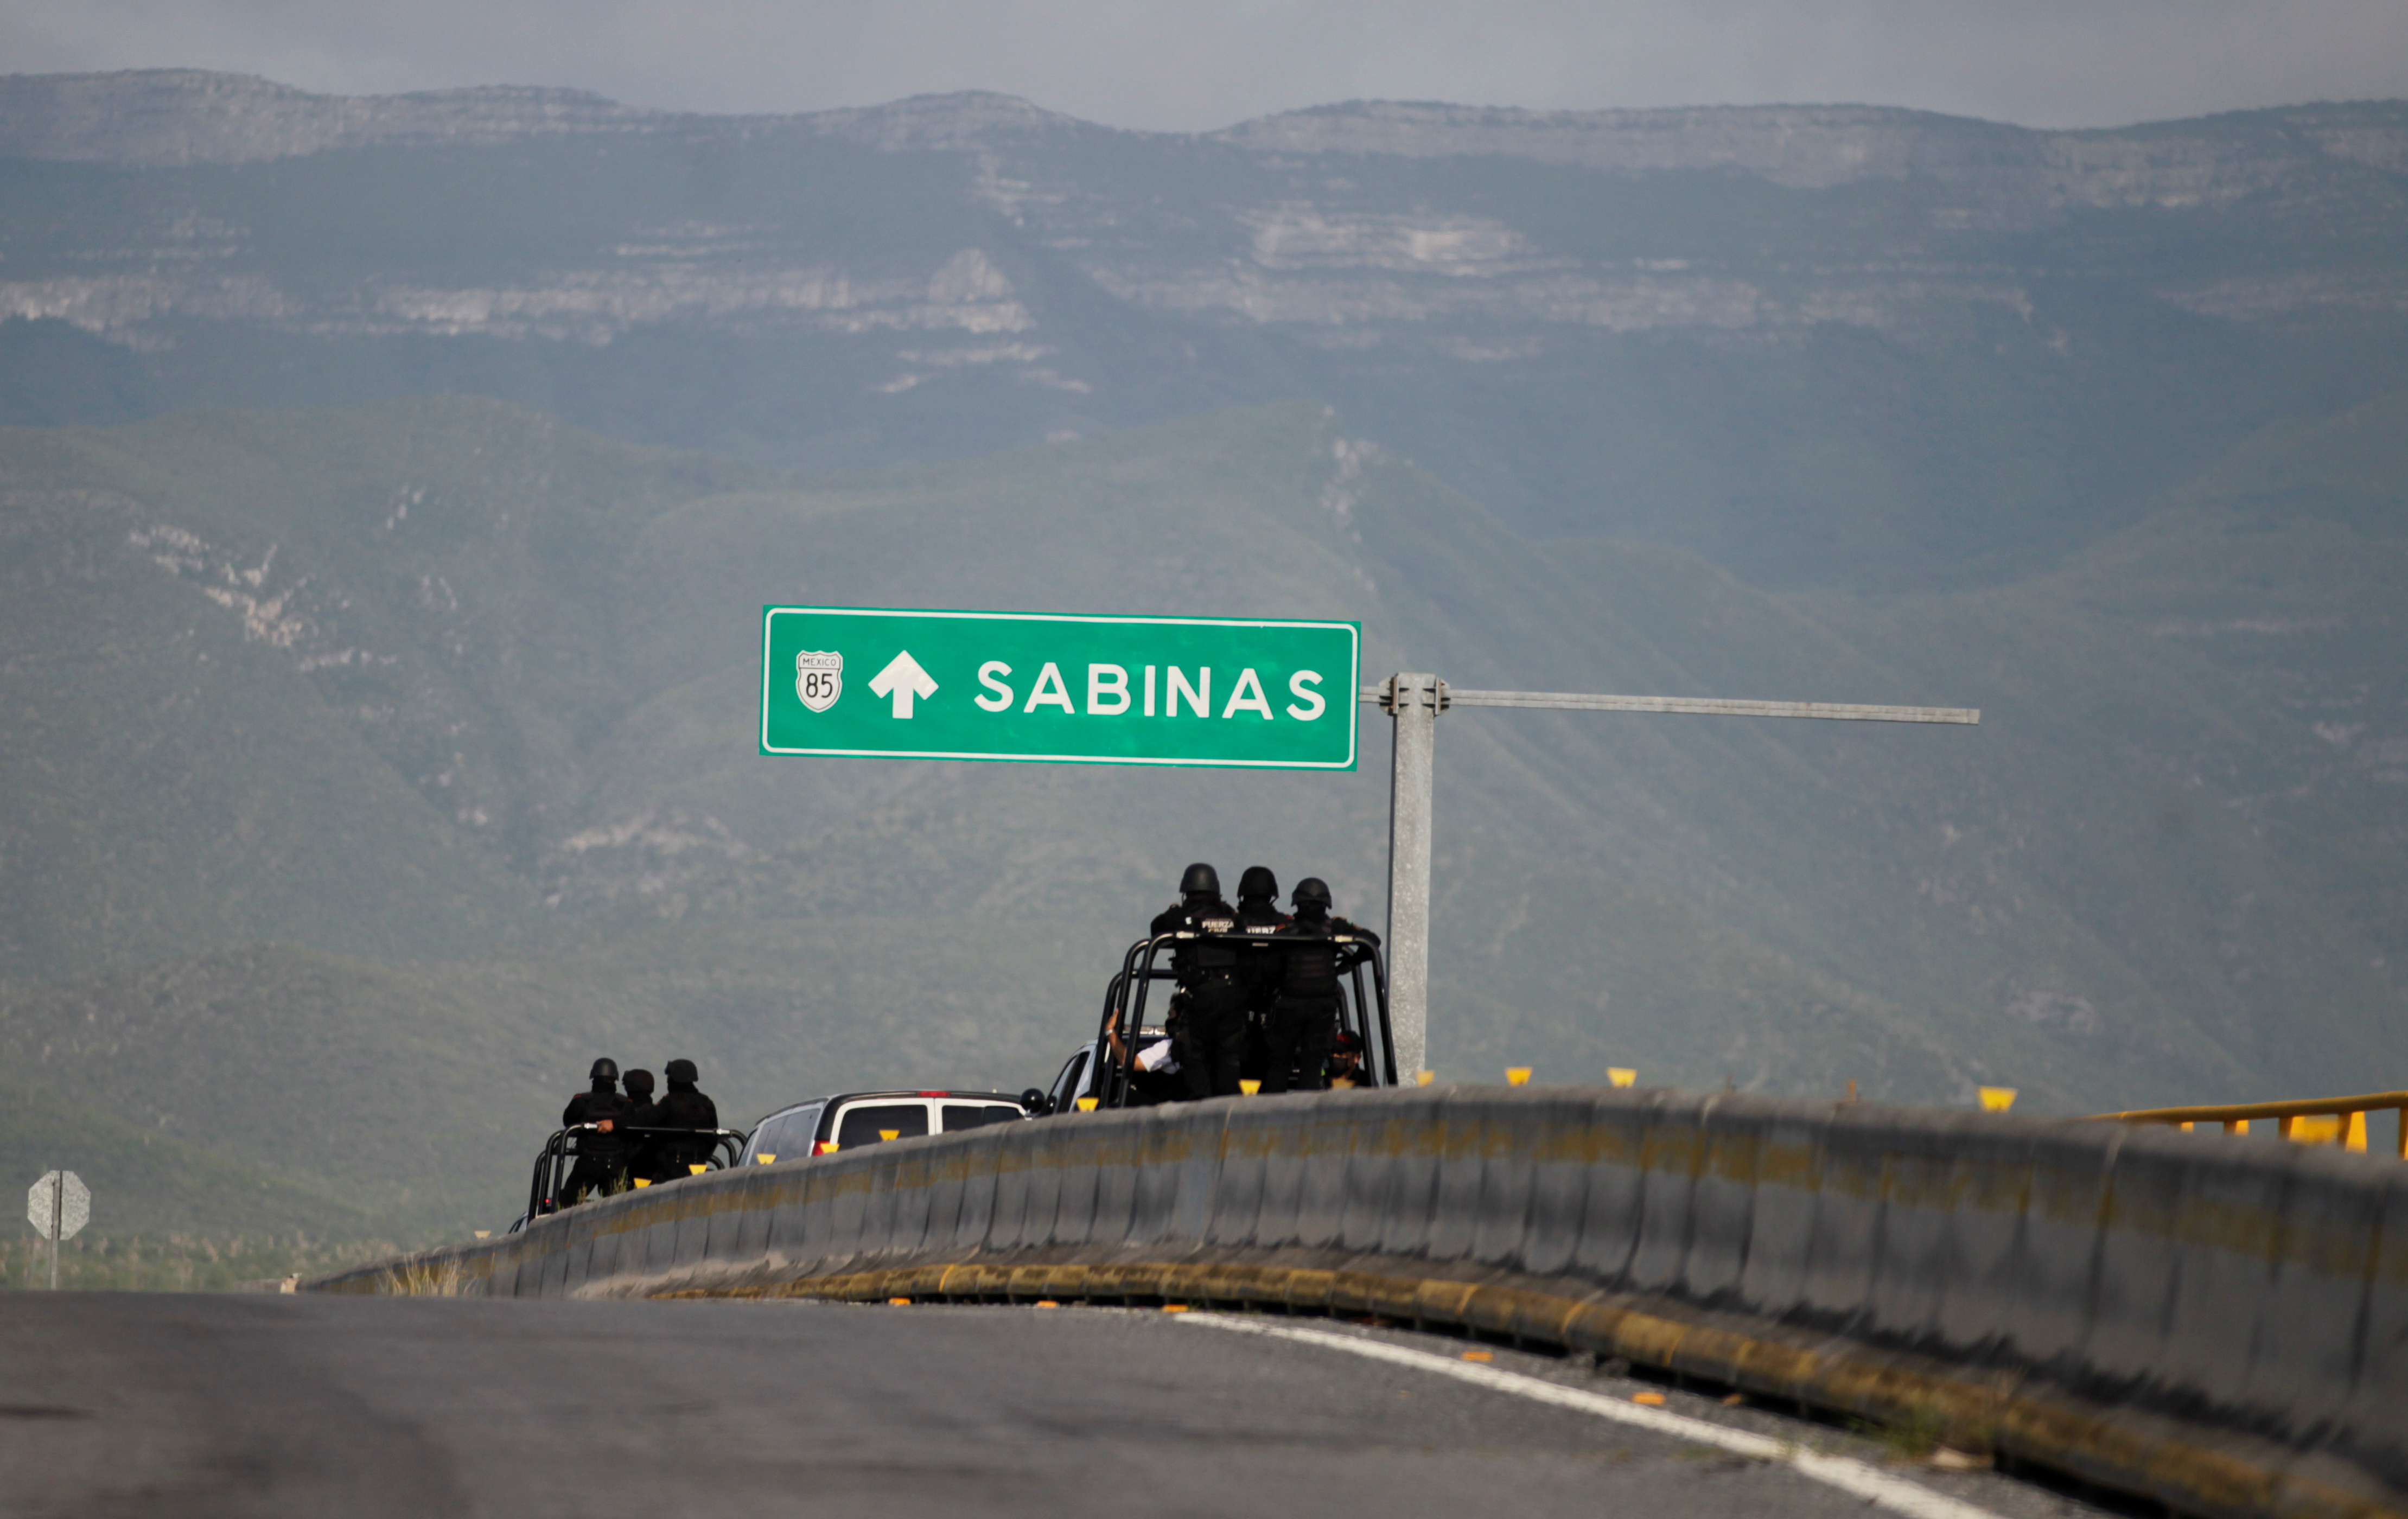 Carretera de la muerte: la verdad tras el tramo Monterrey-Nuevo Laredo donde la gente “desaparece”
REUTERS/Daniel Becerril